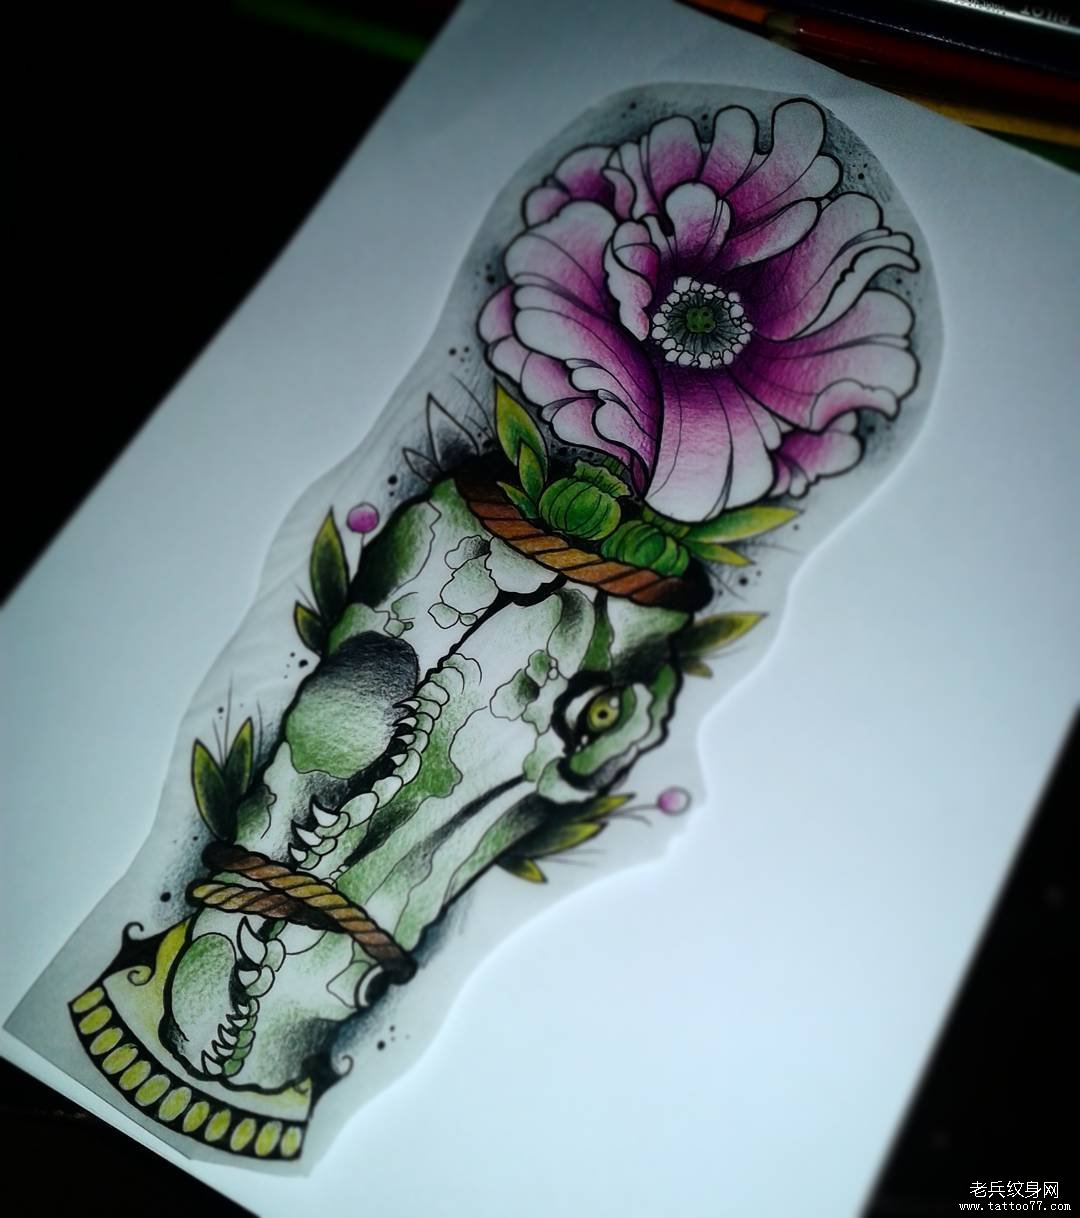 鳄鱼头像花朵彩色纹身图案手稿